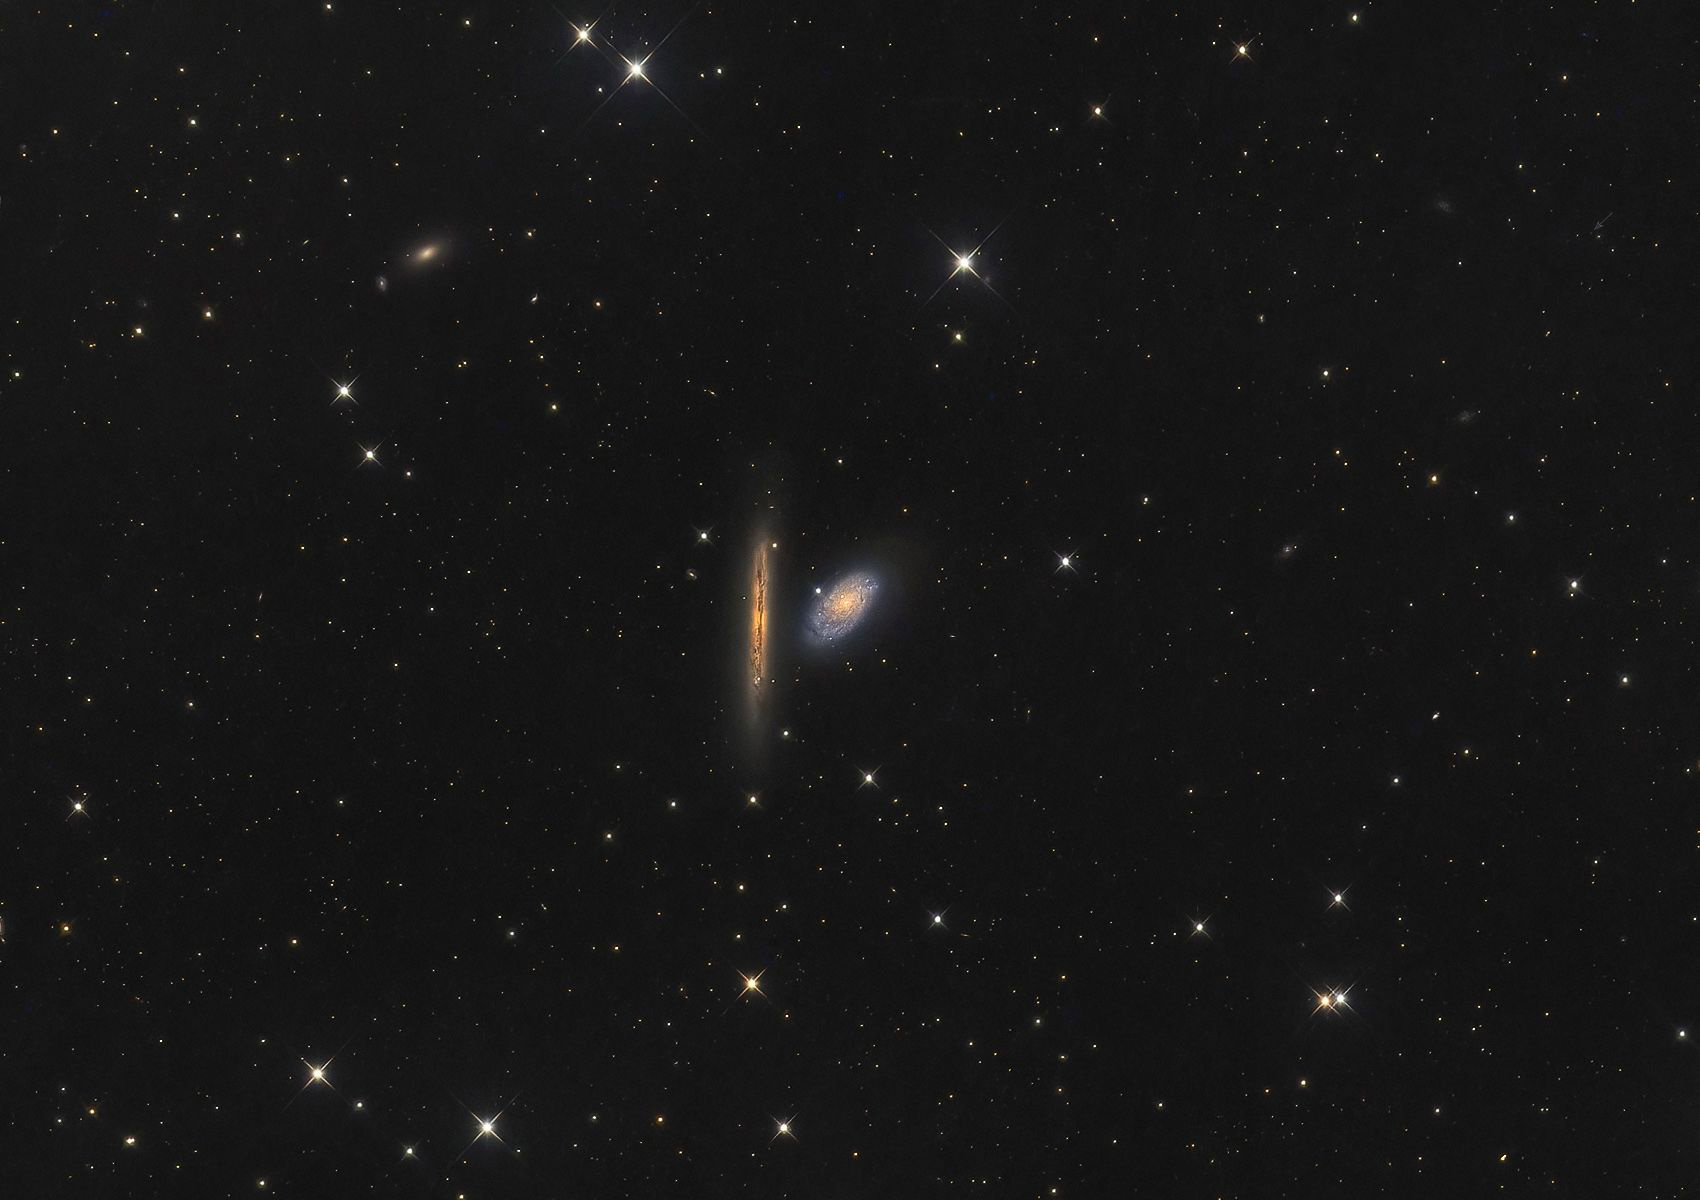 NGC 4298 + 4302